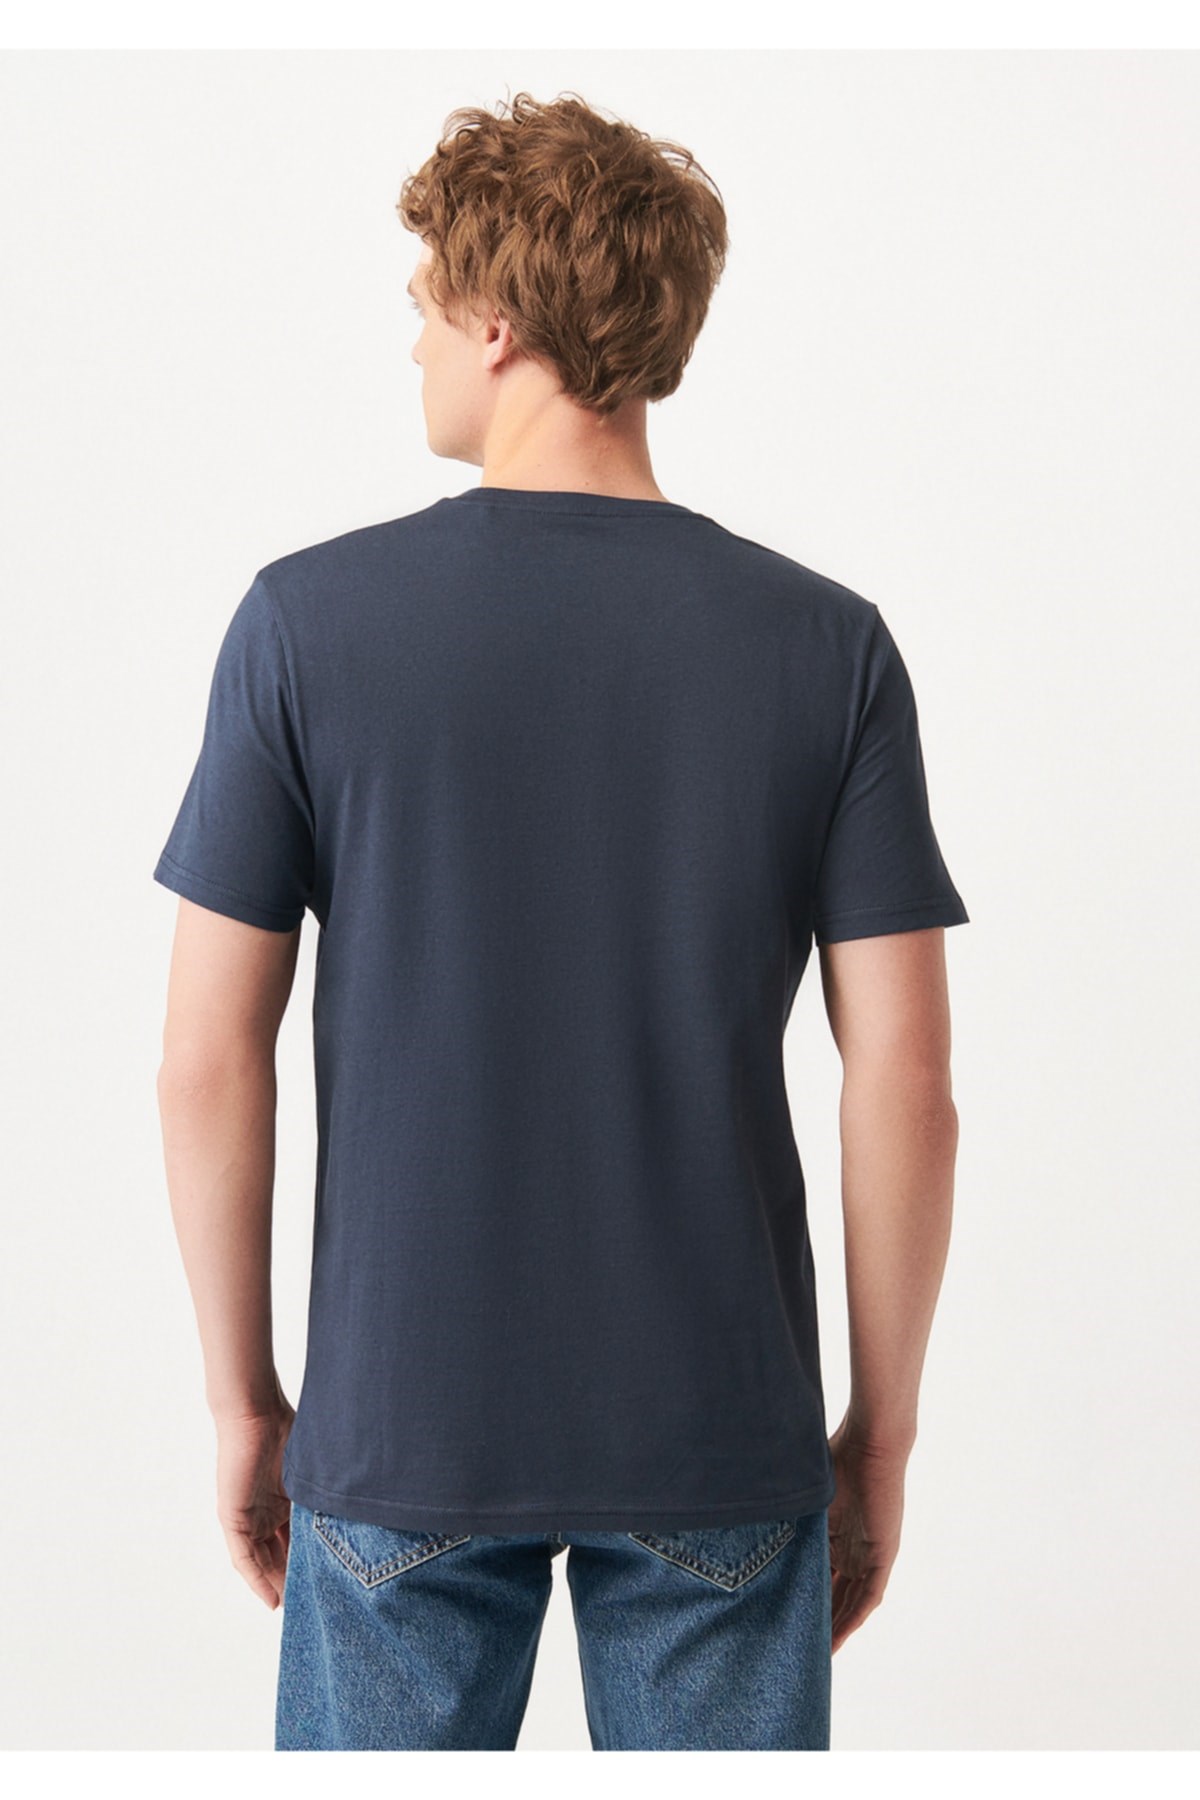 Mavi Jeans Erkek T-Shirt 065781-28417 